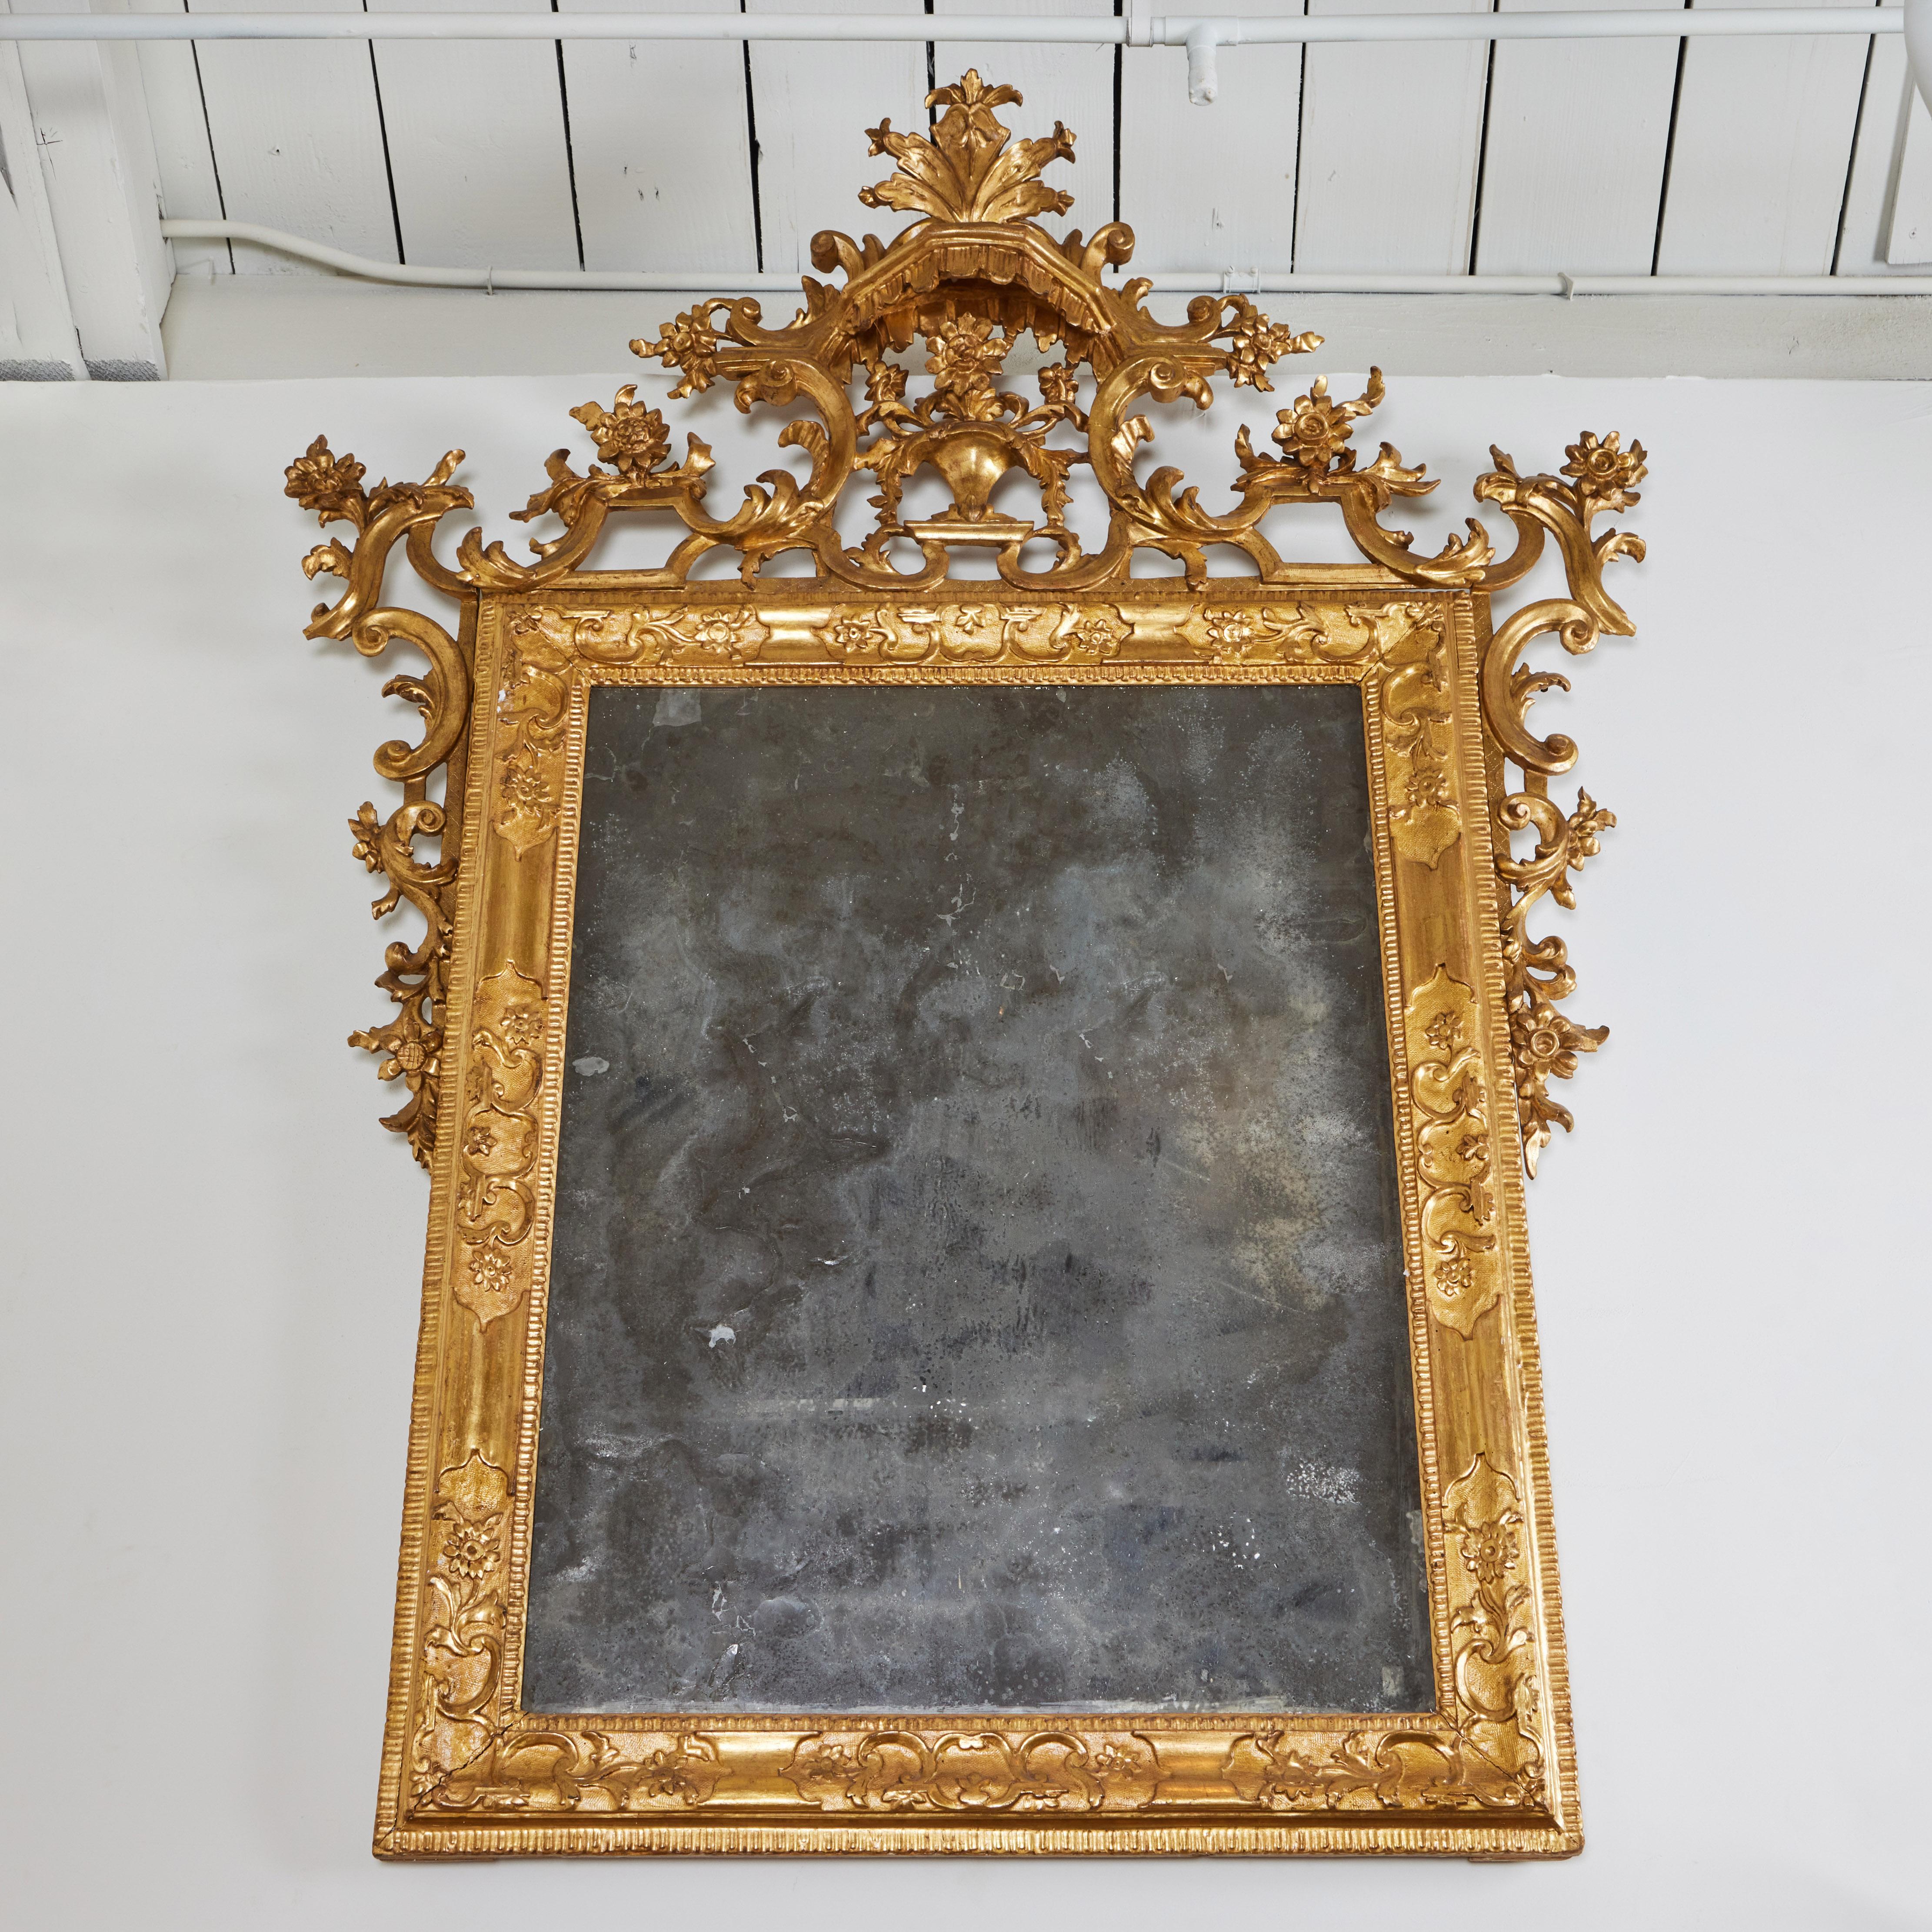 Paire de miroirs vénitiens sculptés à la main et dorés, de style Chinoiserie, présentant chacun une pagode et un motif floral.  Tout est d'origine, y compris le miroir qui présente des taches d'âge et une perte d'argenture sur les plaques.